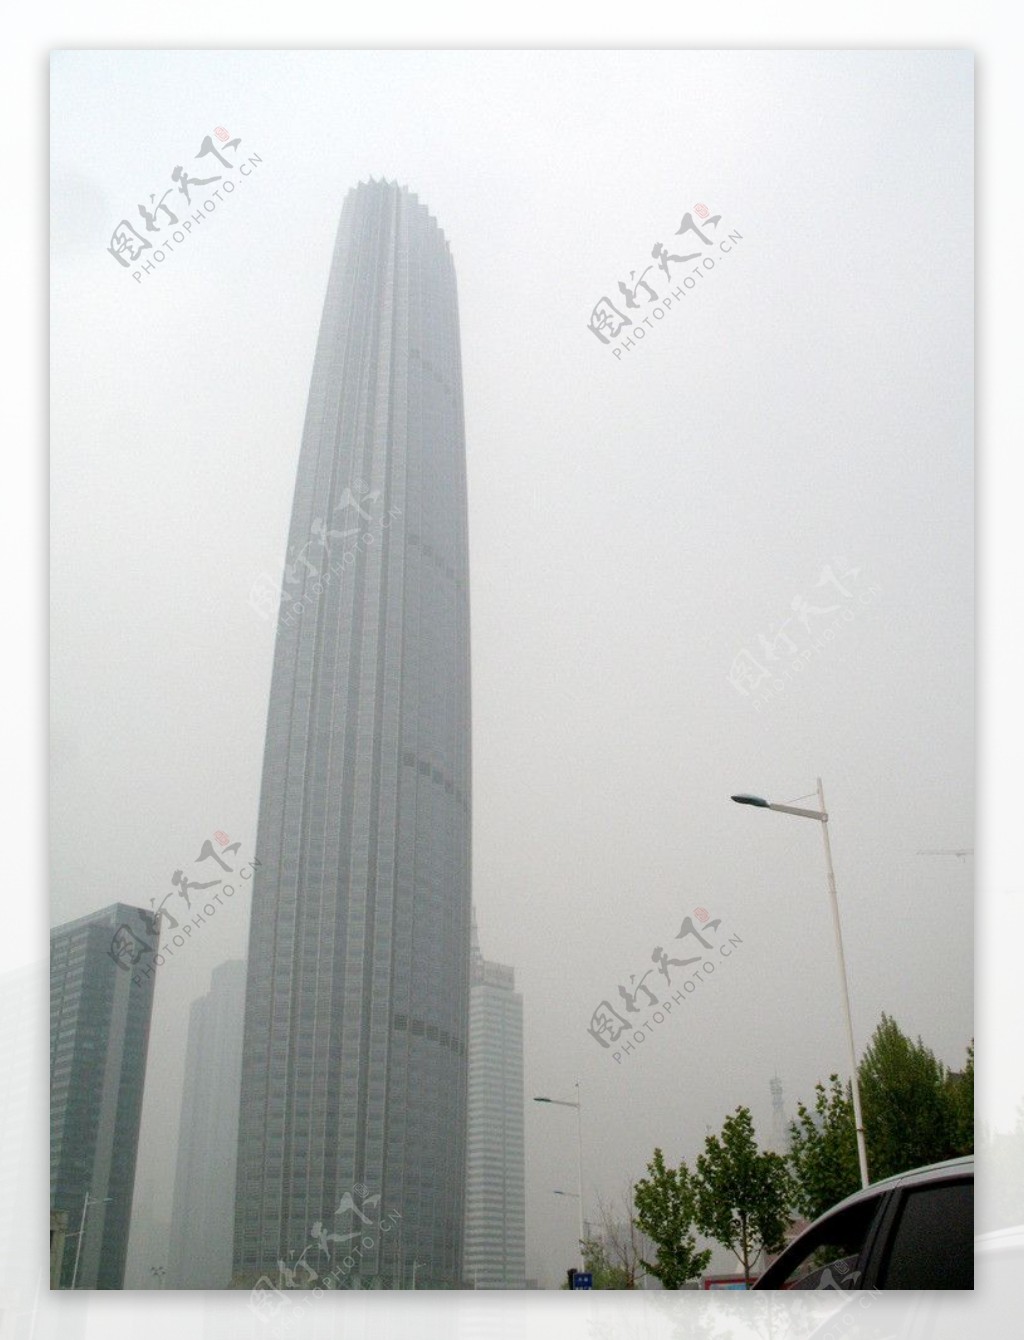 天津环球金融中心图片